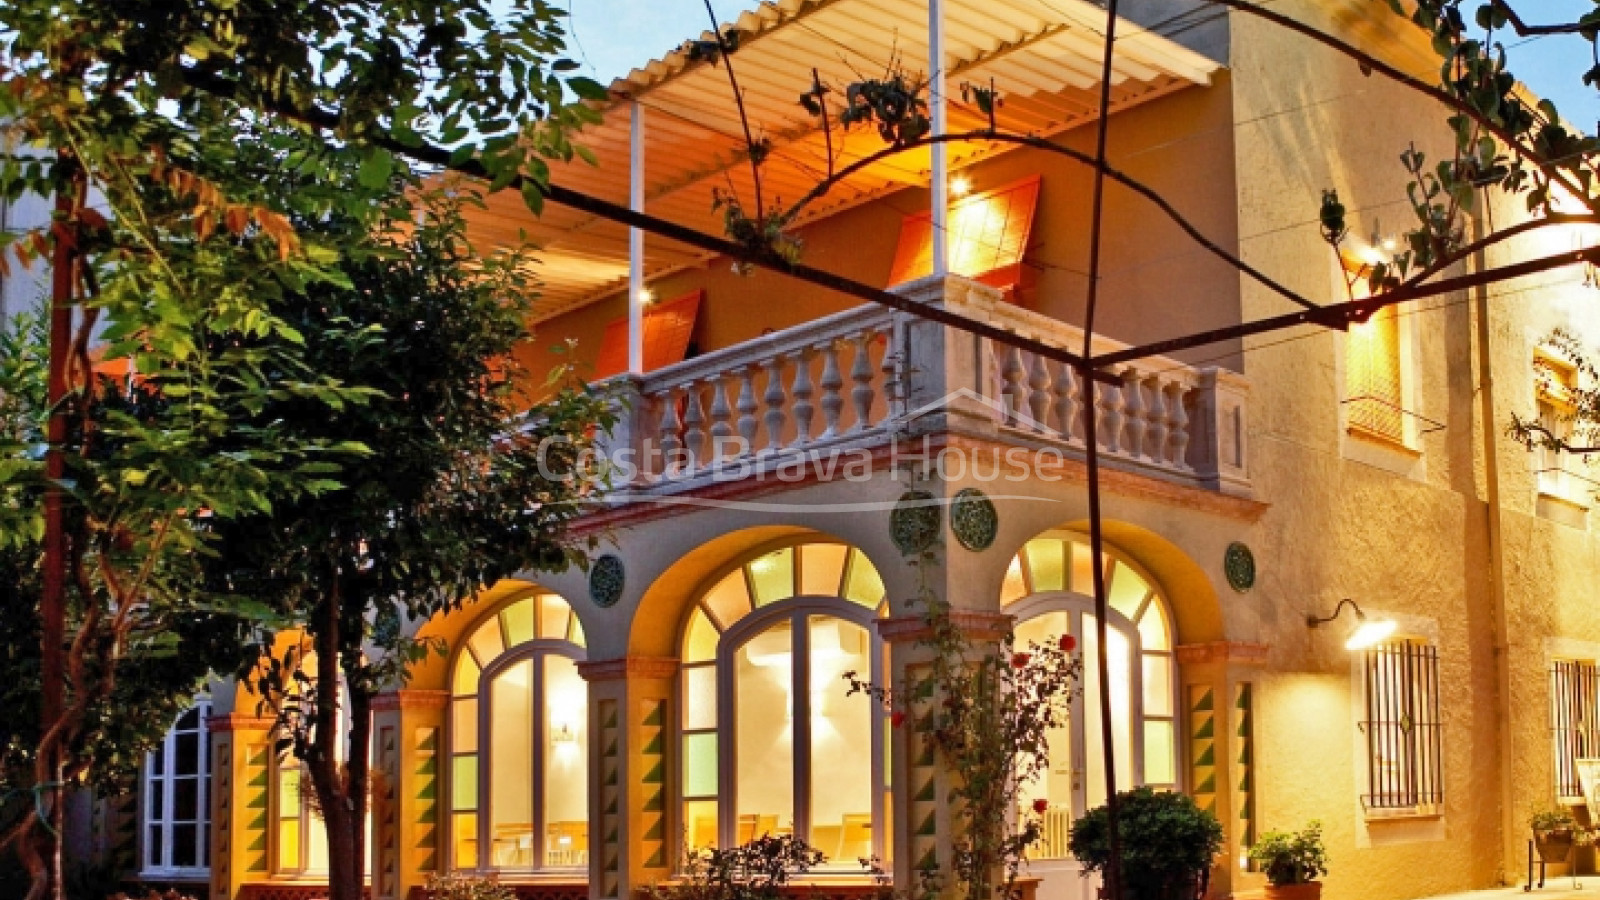 Hotel boutique de 5 habitacions en venda al Baix Empordà